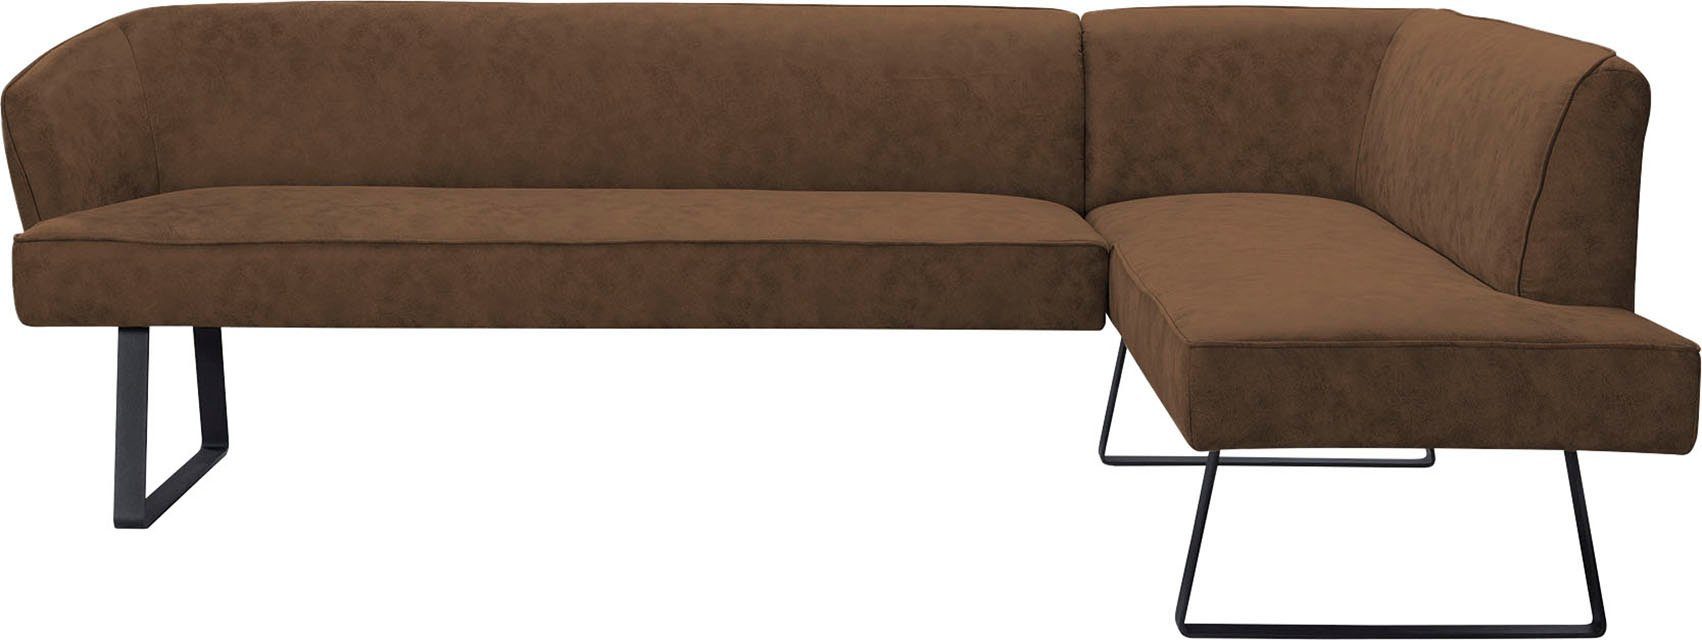 sofa Keder in exxpo fashion Bezug und Eckbank Qualitäten verschiedenen - mit Americano, Metallfüßen,